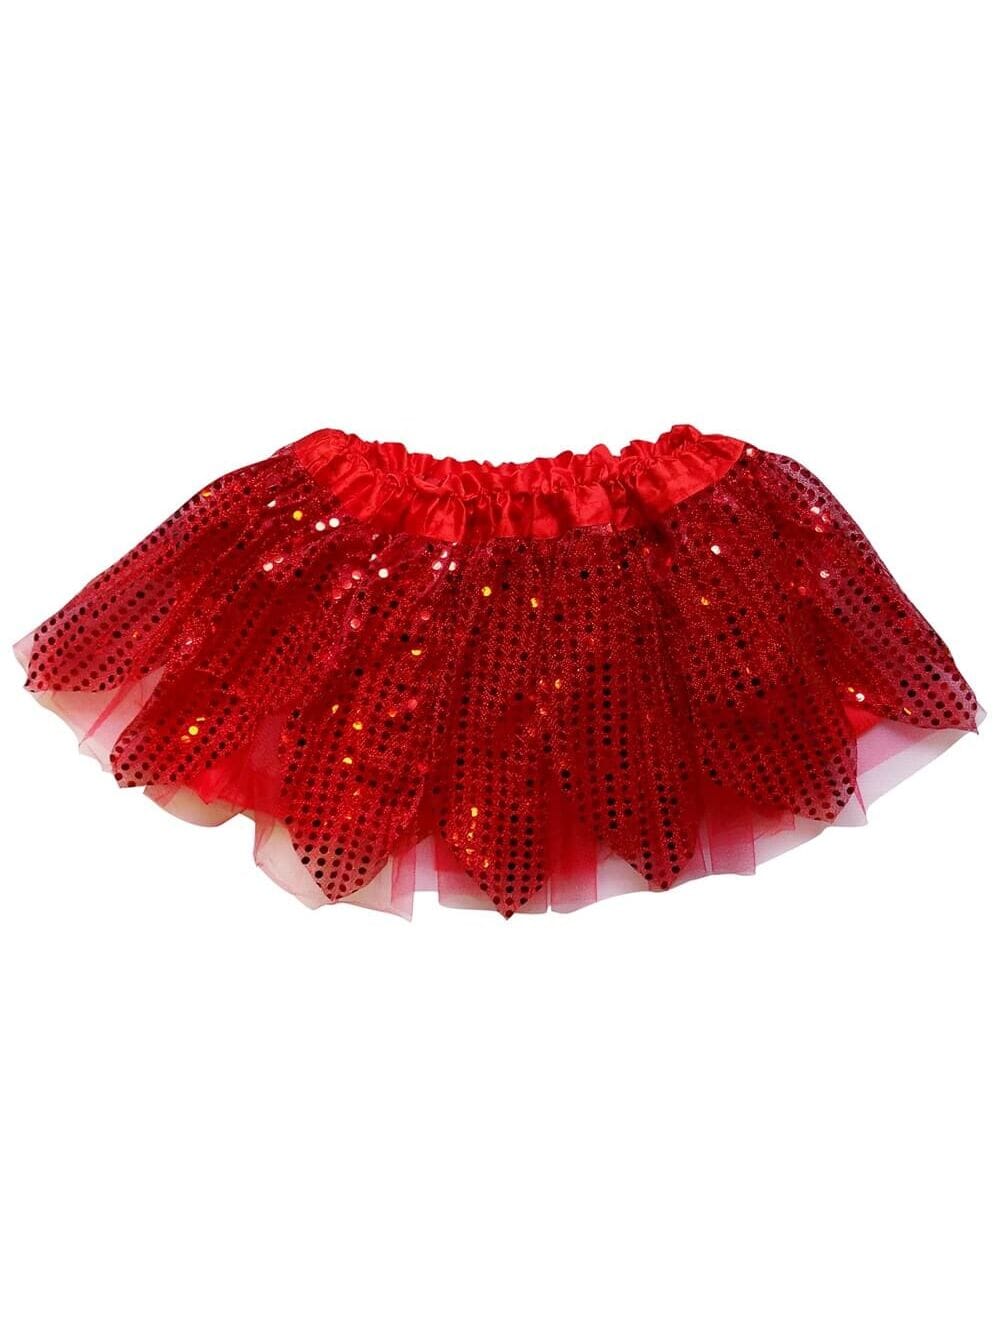 Red Sparkle Running Tutu Skirt Costume for Girls, Women, Plus - Sydney So Sweet